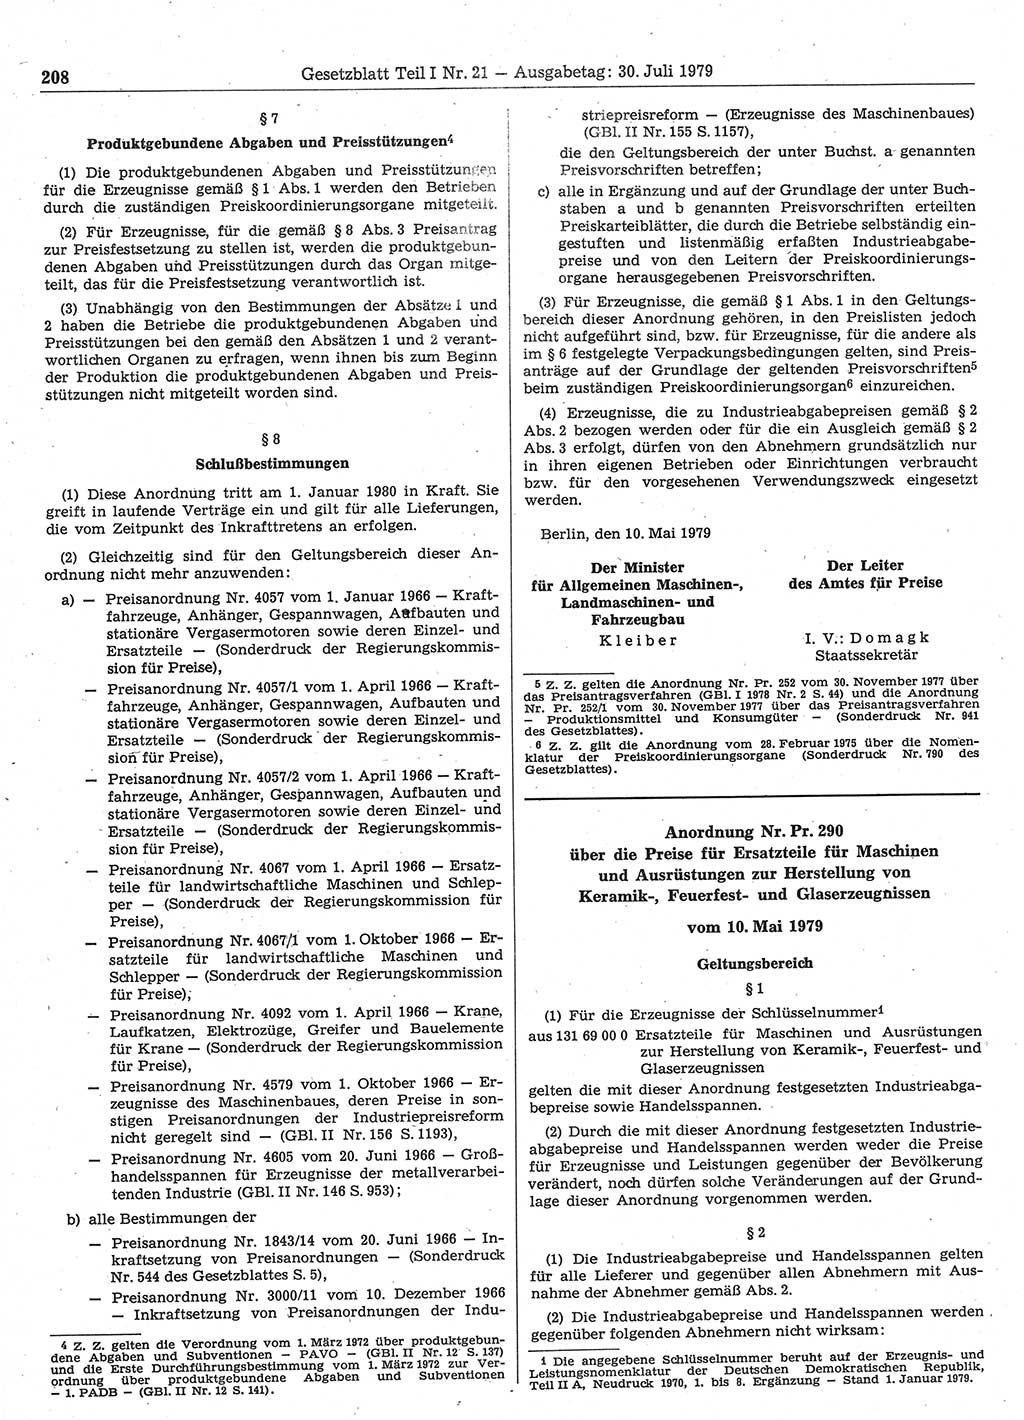 Gesetzblatt (GBl.) der Deutschen Demokratischen Republik (DDR) Teil Ⅰ 1979, Seite 208 (GBl. DDR Ⅰ 1979, S. 208)